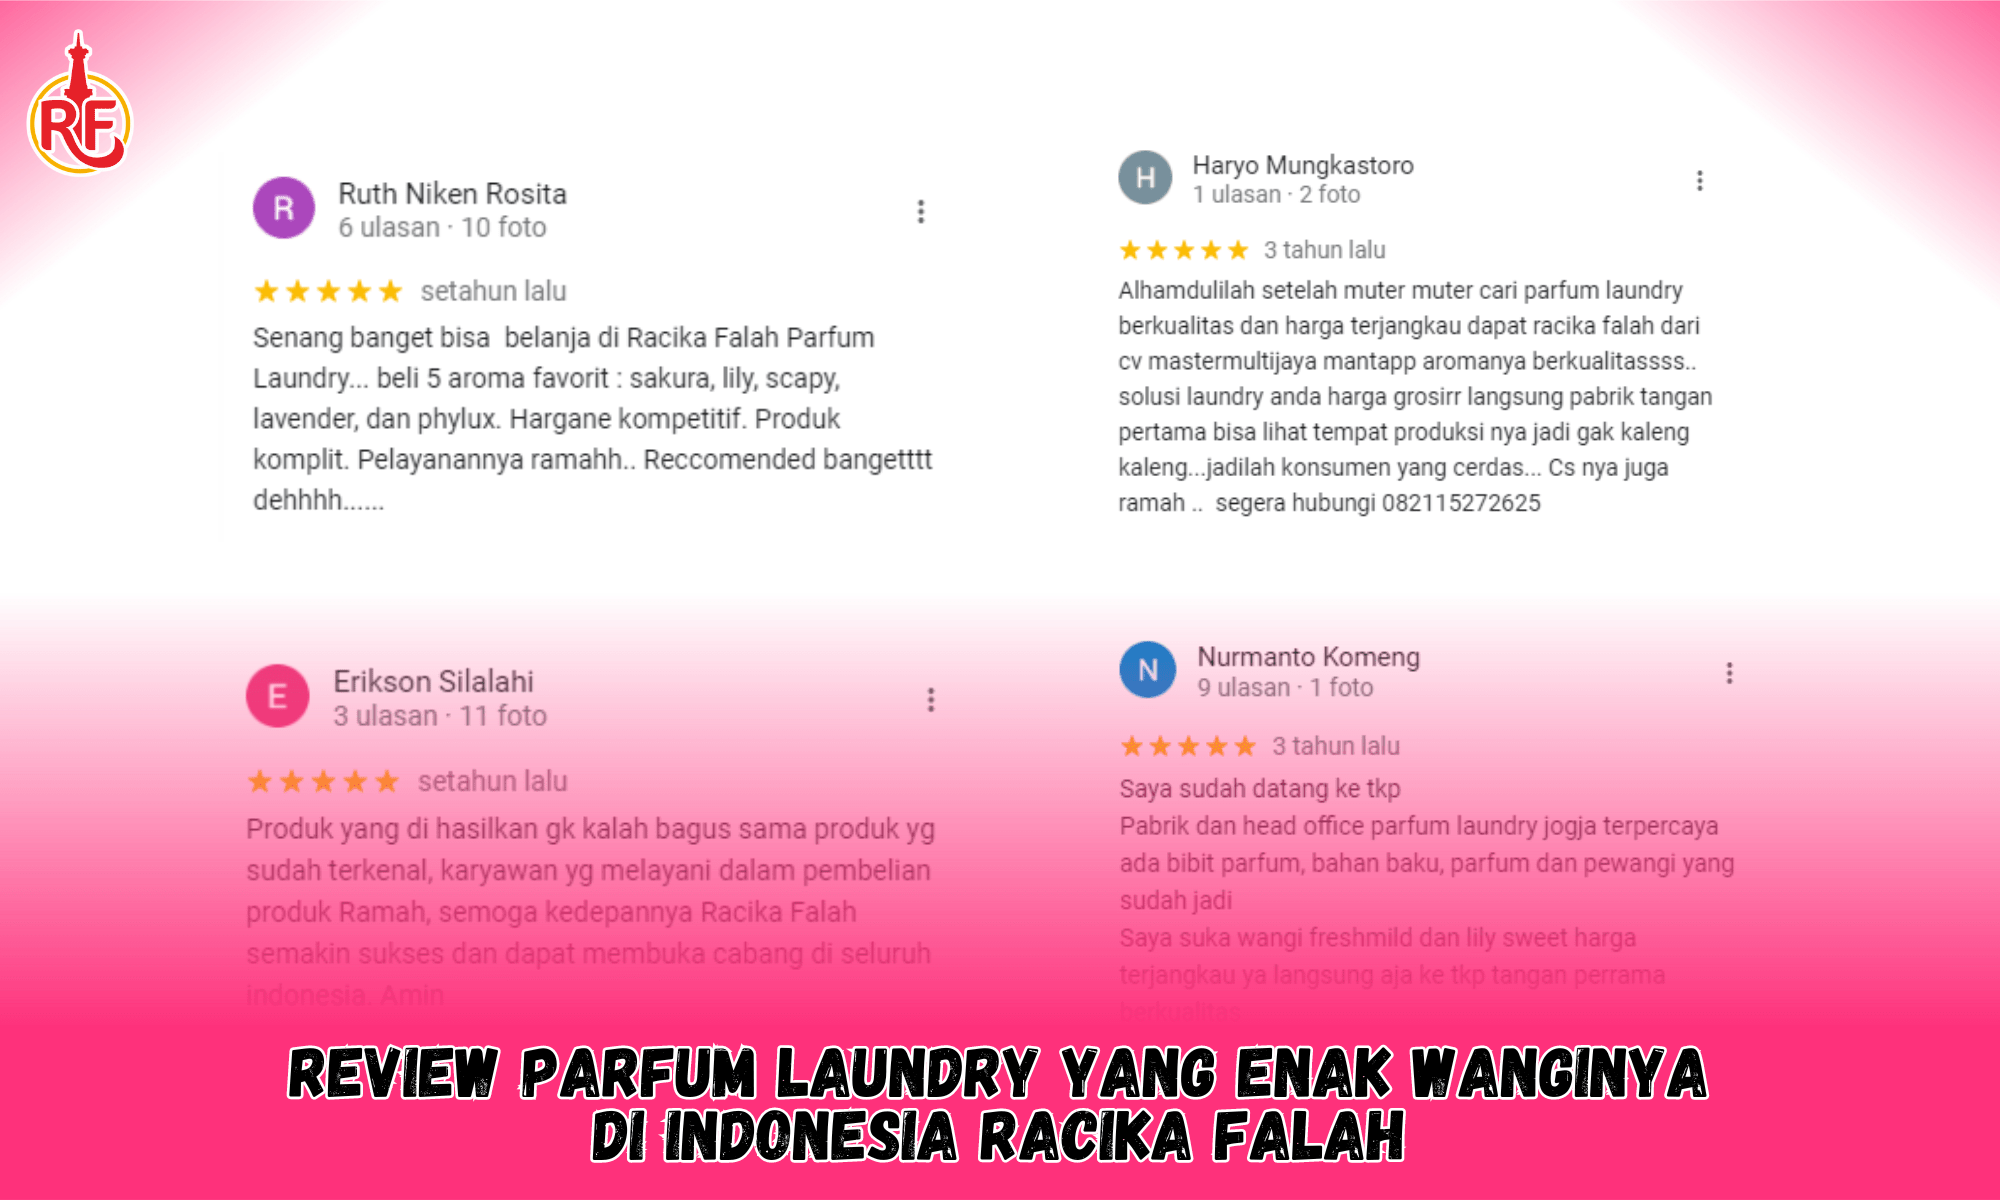 Review Parfum Laundry